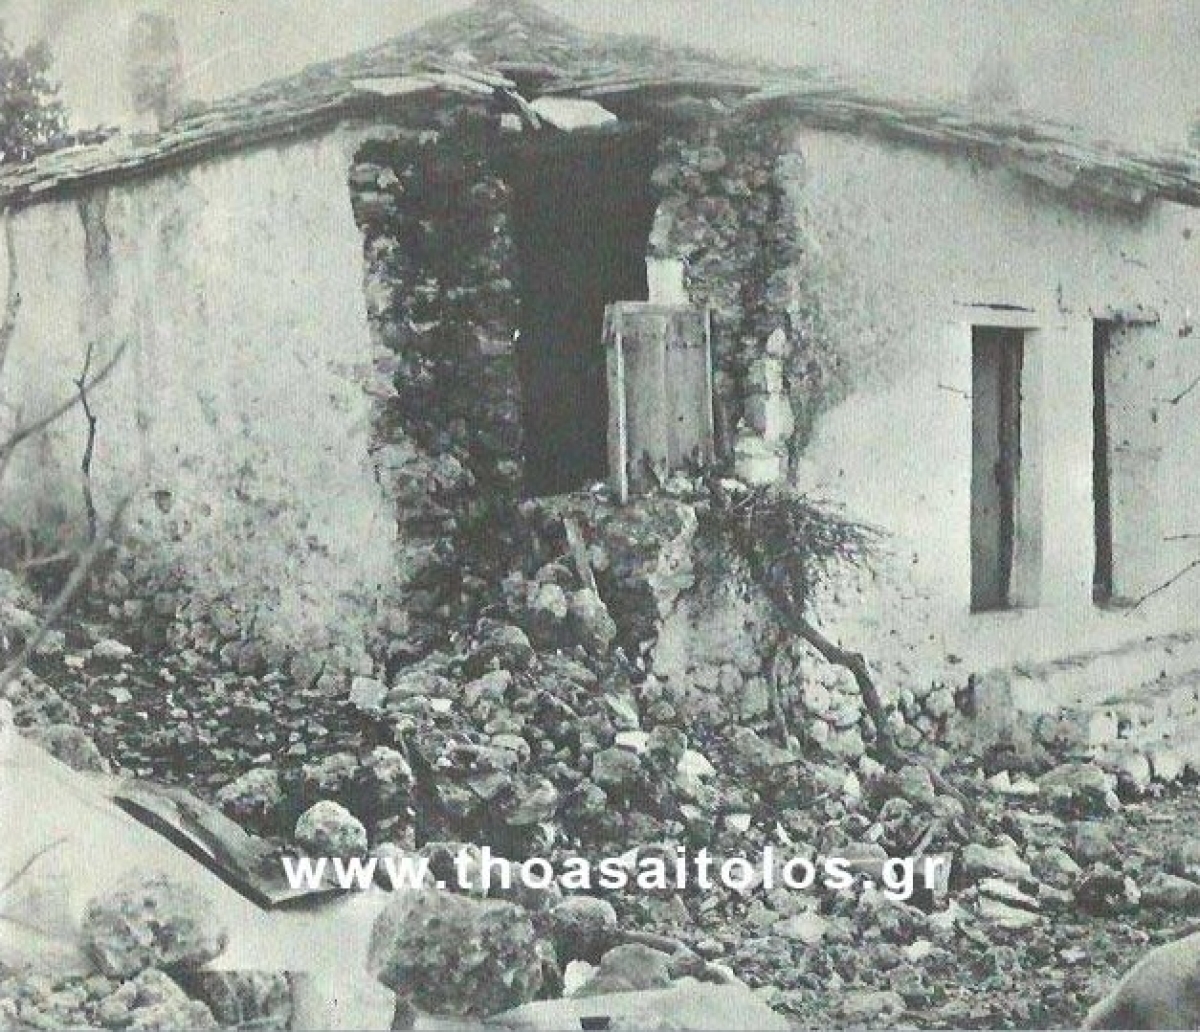 Σαν σήμερα, 29 Οκτωβρίου 1966: Ο σεισμός στο Ξηρόμερο που άφησε ένα νεκρό κοριτσάκι και 10.000 άστεγους